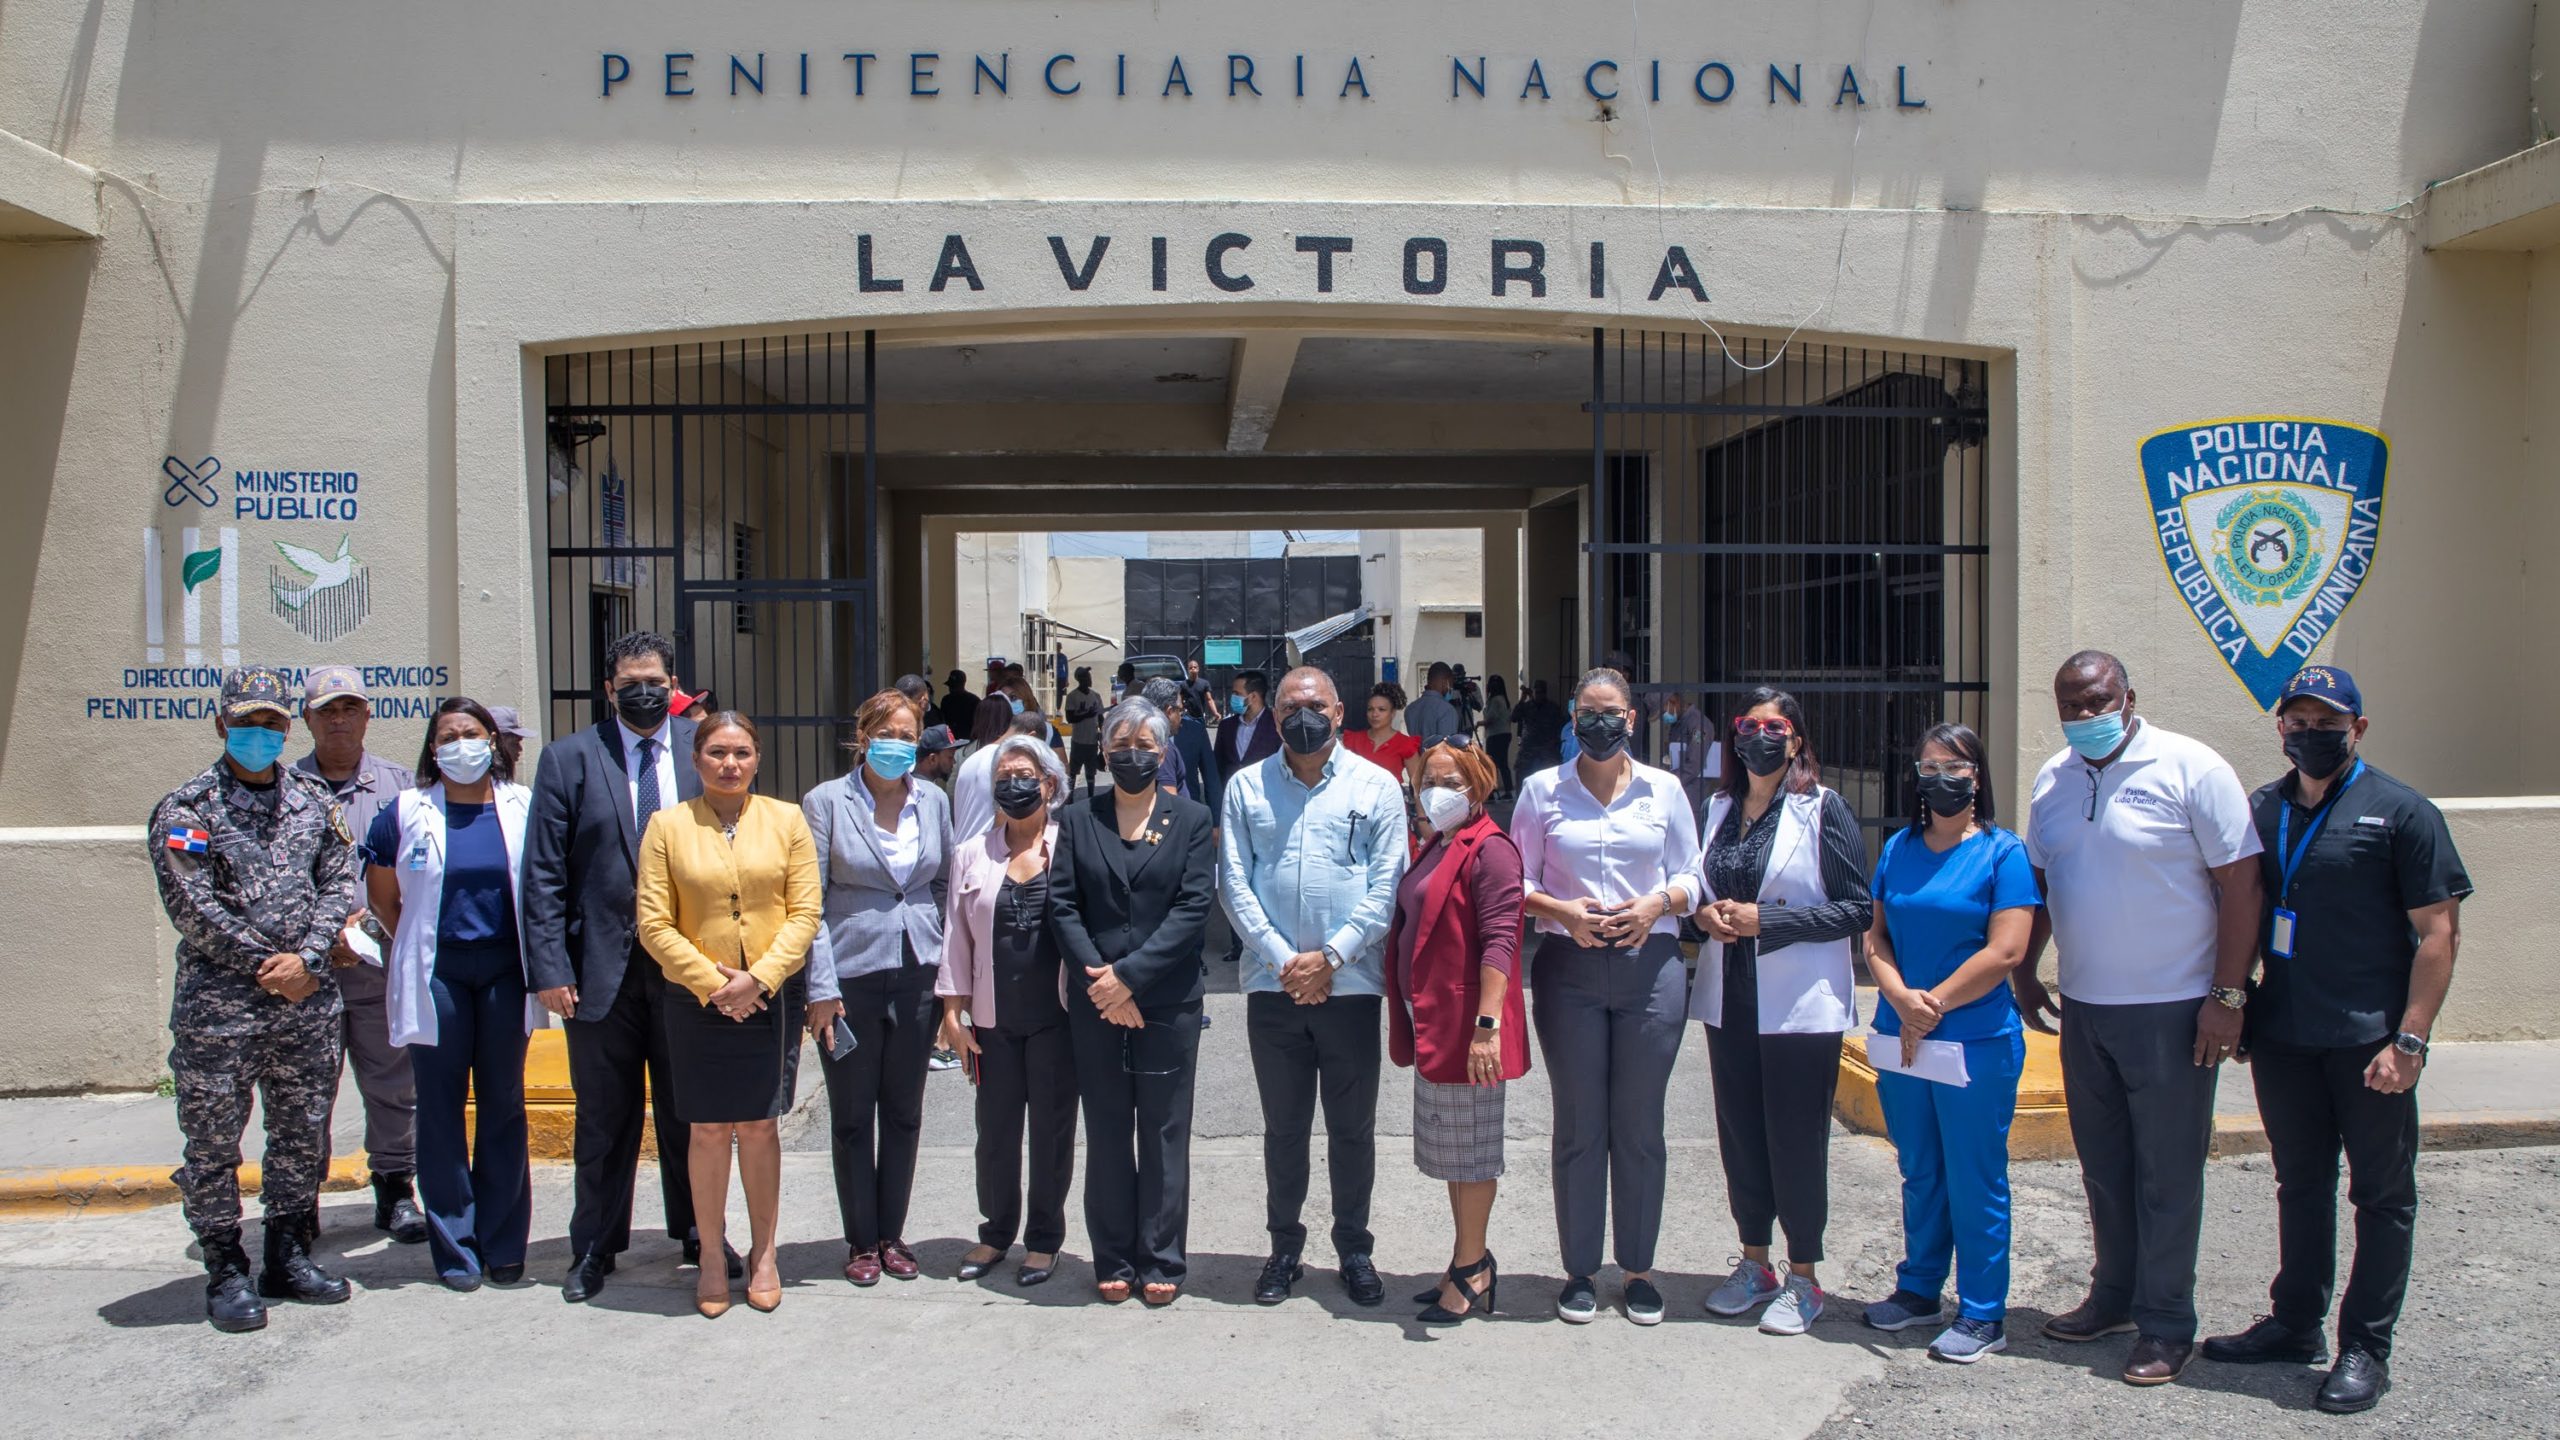 Ultiman detalles en La Victoria para el plan de dignificación proceso penal